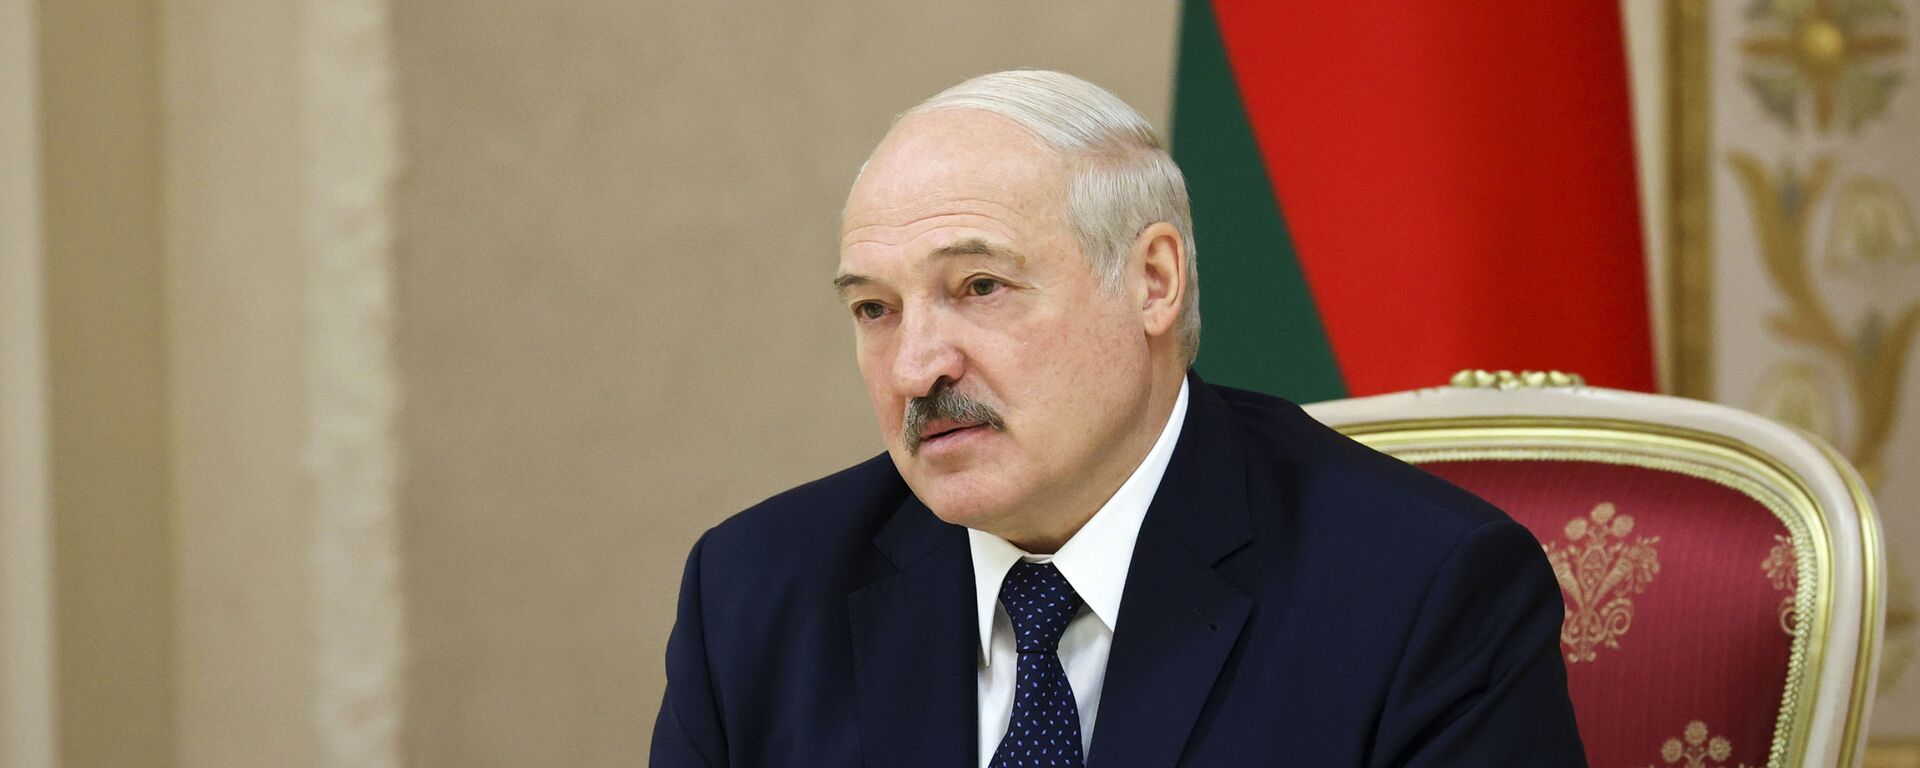 Президент Белоруссии Александр Лукашенко, фото из архива - Sputnik Azərbaycan, 1920, 14.04.2021